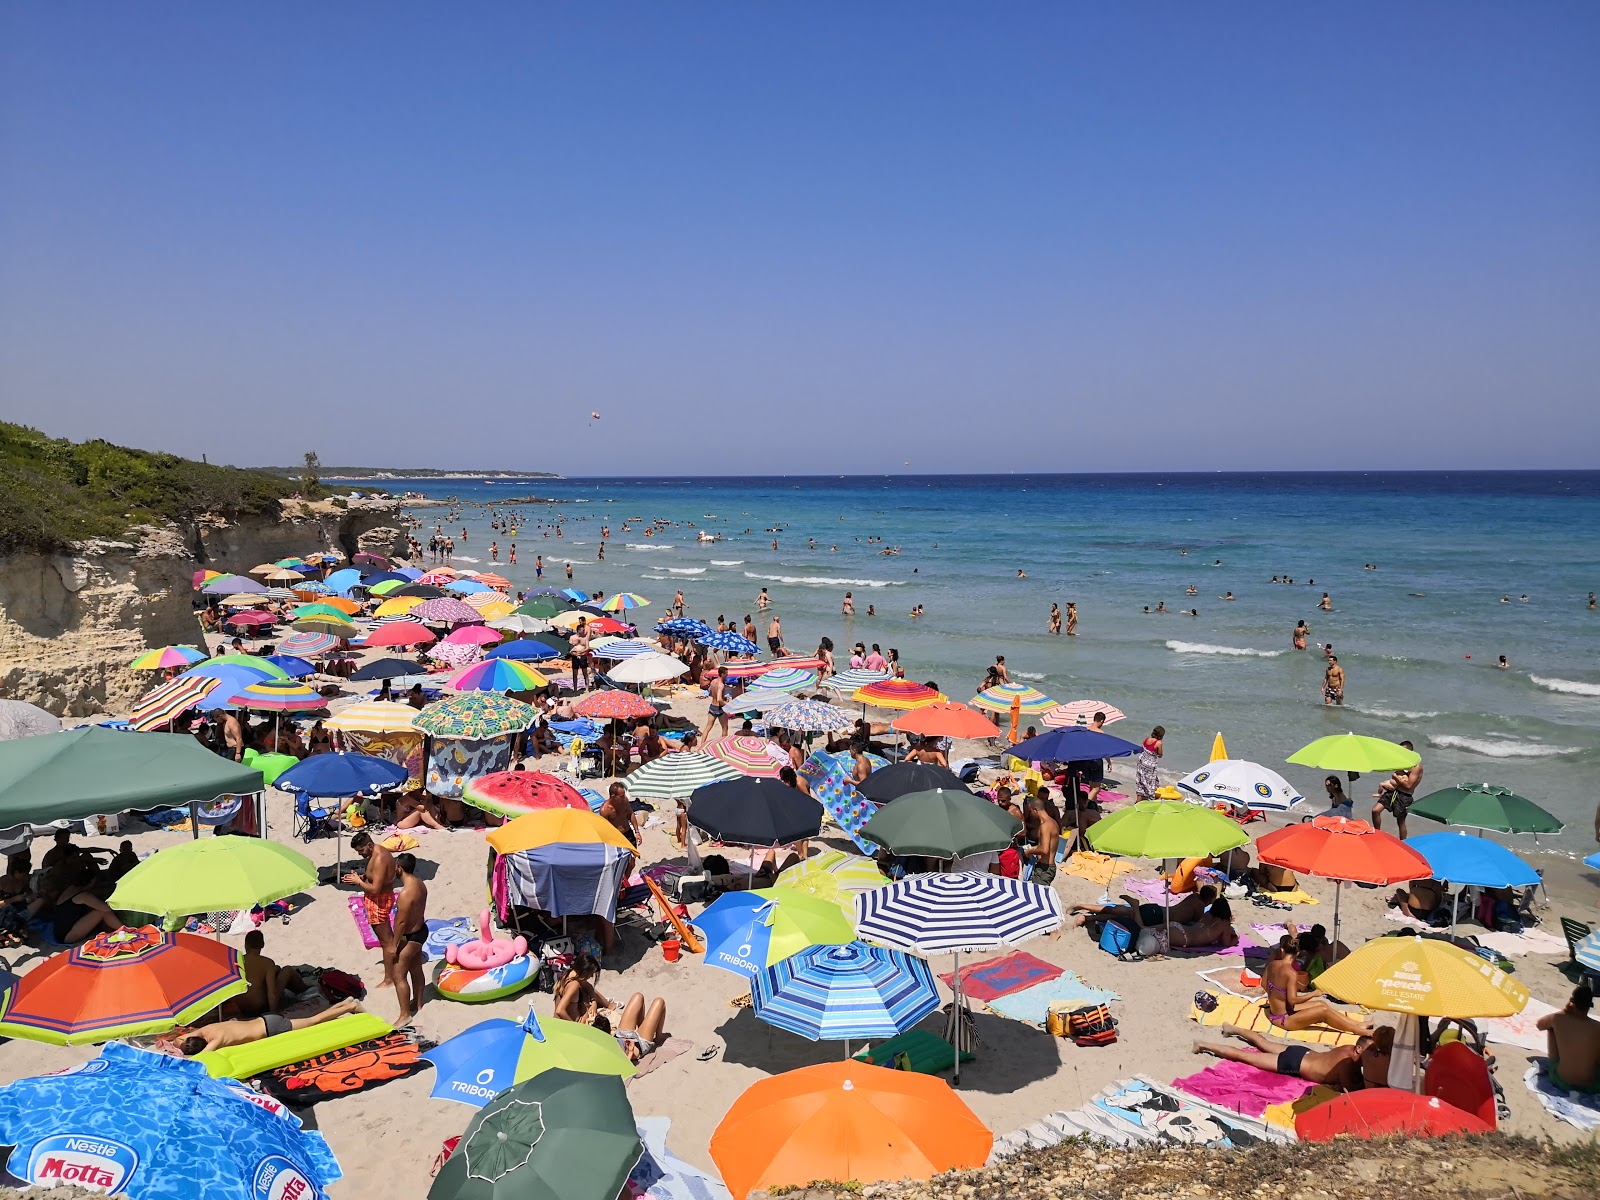 Foto de Spiaggia Baia dei Turchi localizado em área natural